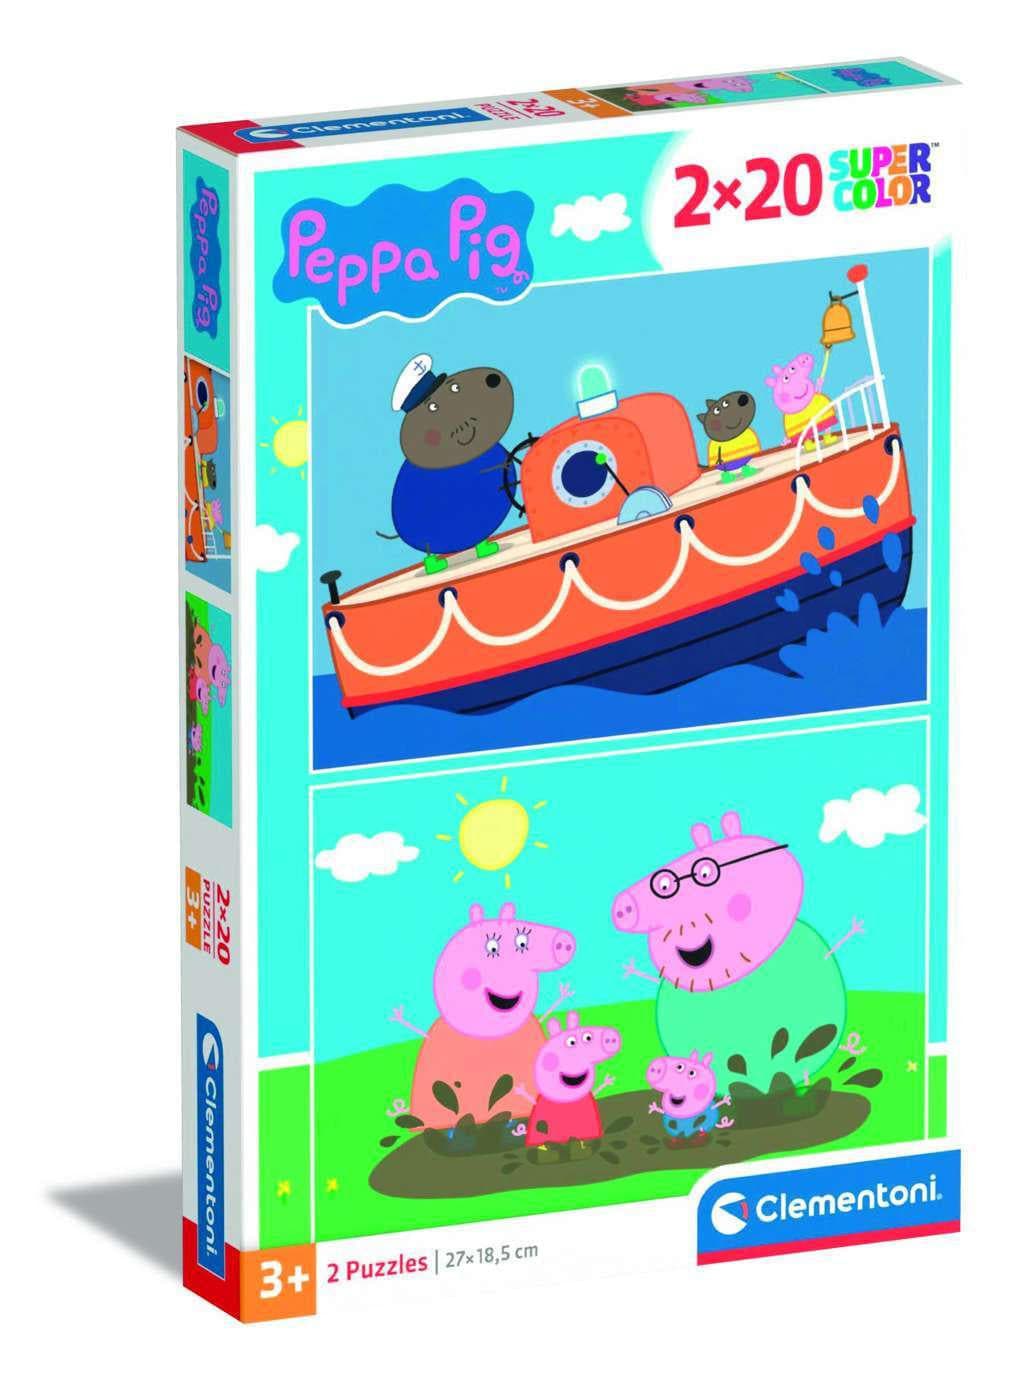 Peppa Pig 2 X 20 Pieces